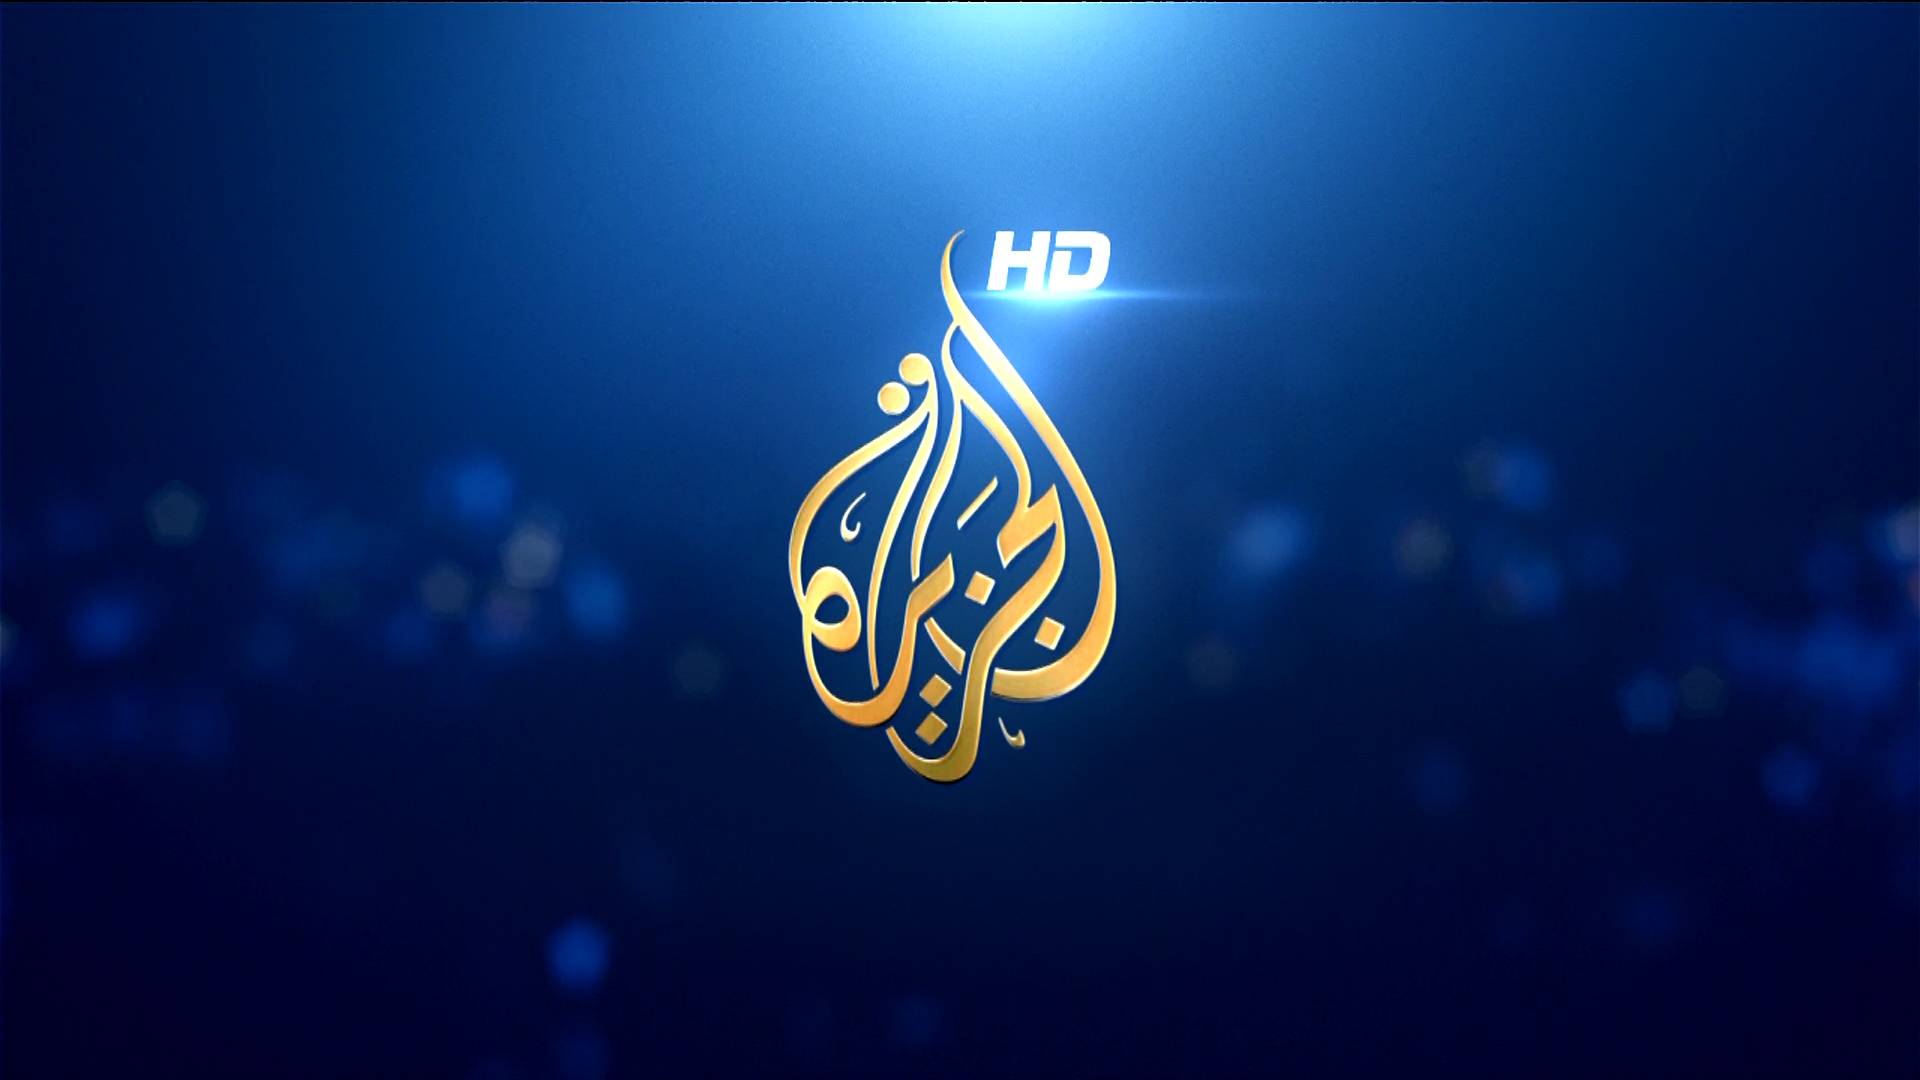   إقالة أحمد الشروف من قناة الجزيرة بسبب فضيحة أخلاقية